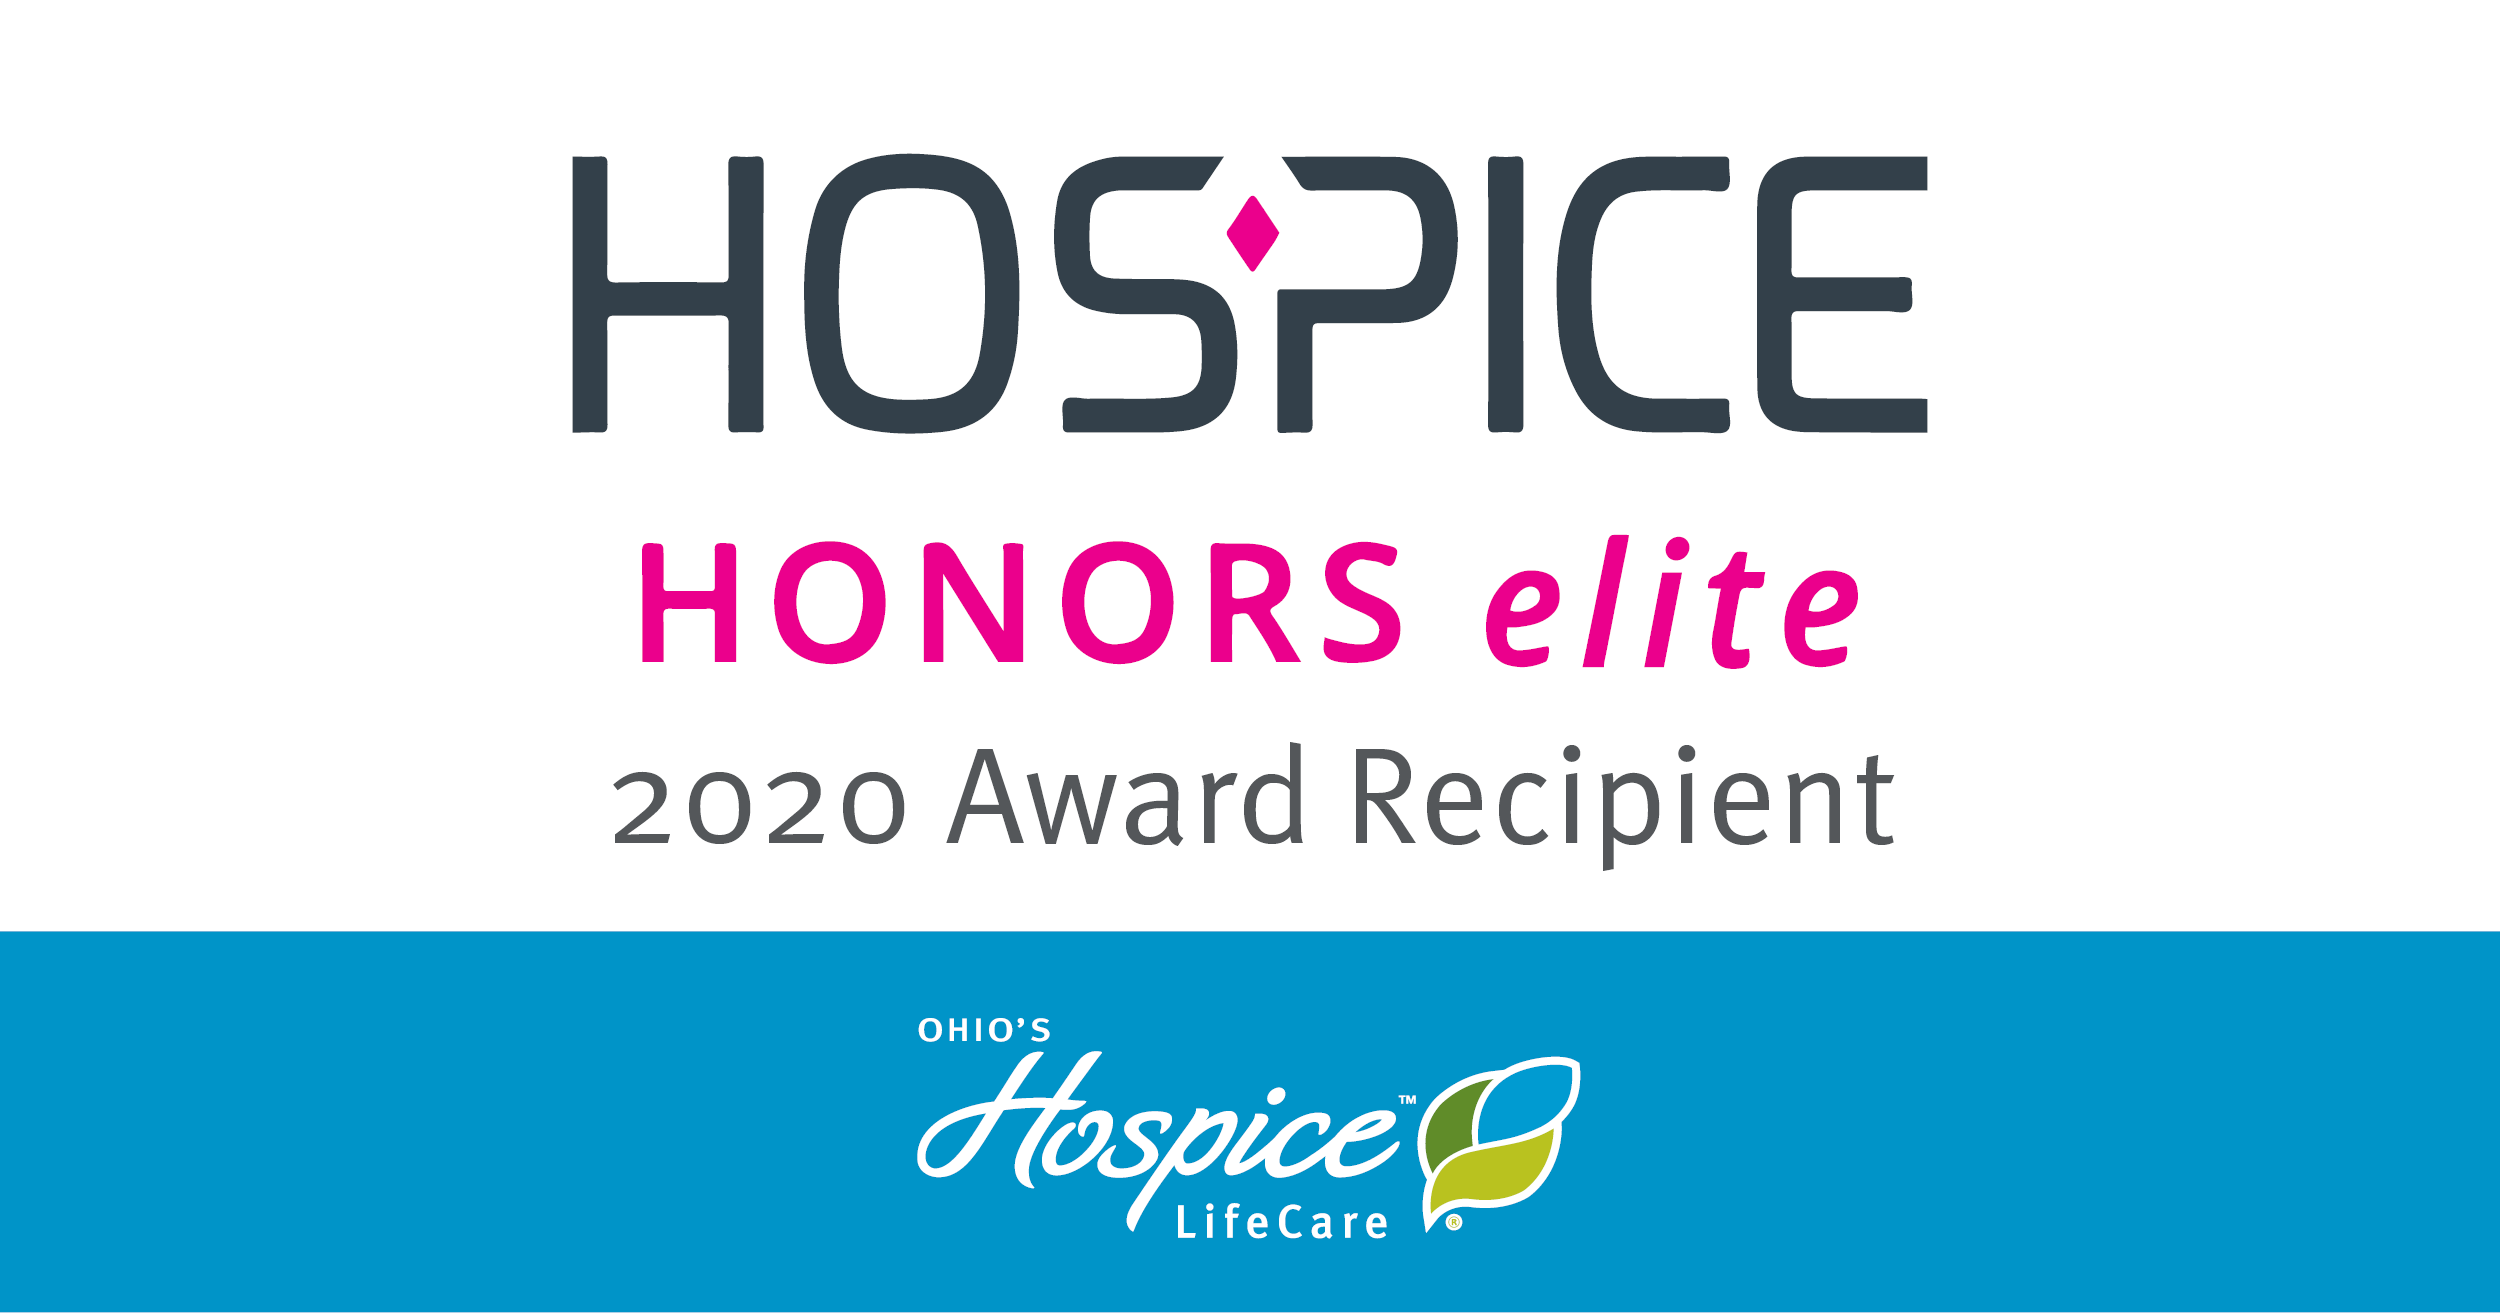 Hospice Honors Elite Award Recipient